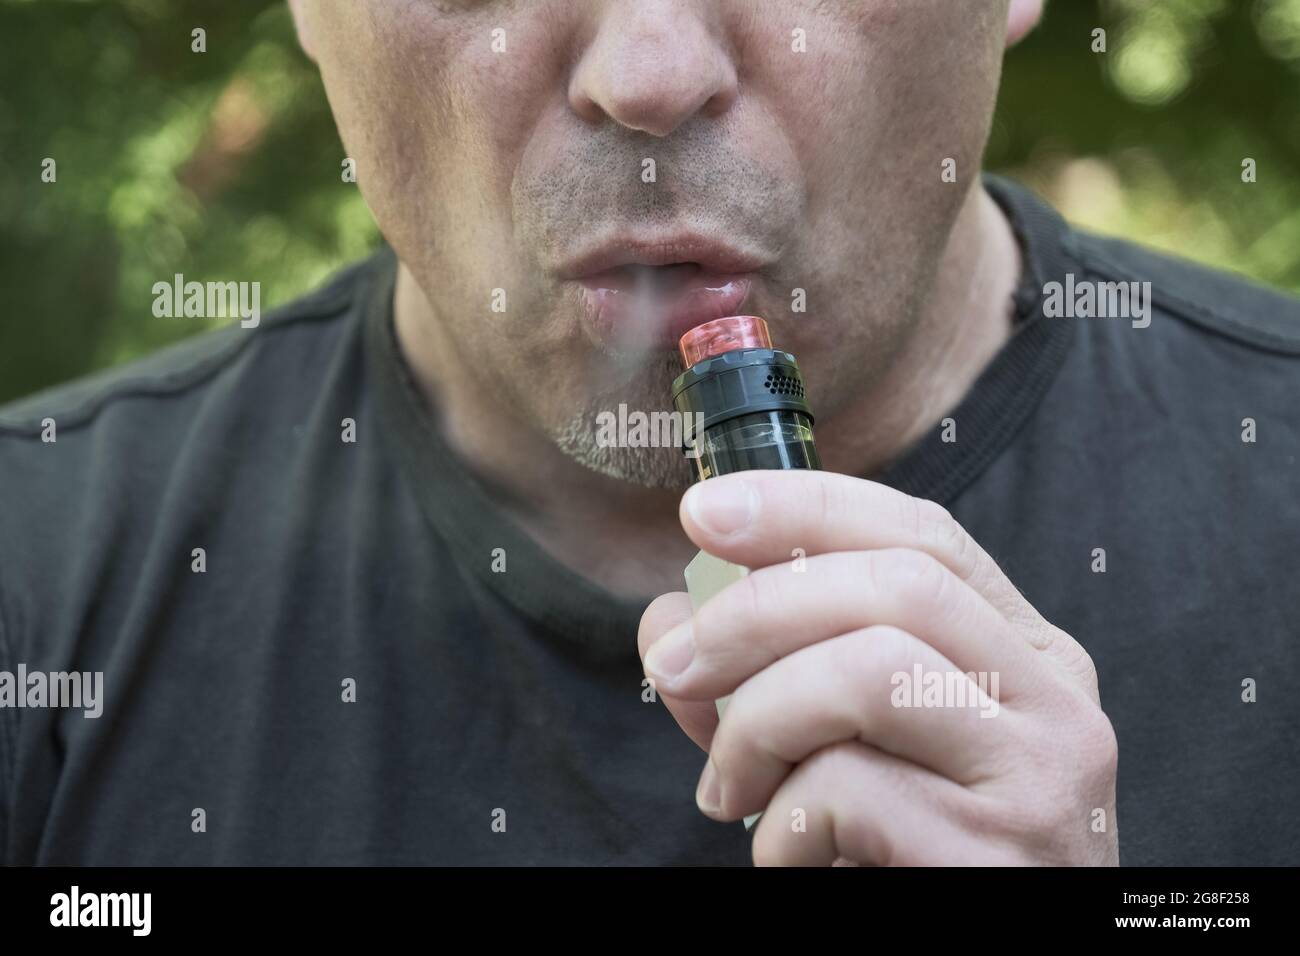 Faccia di un uomo che fuma una sigaretta elettronica. Uomo che tiene il dispositivo di evaporazione ed espala il fumo. Vaporizzare un liquido per inalare Foto Stock